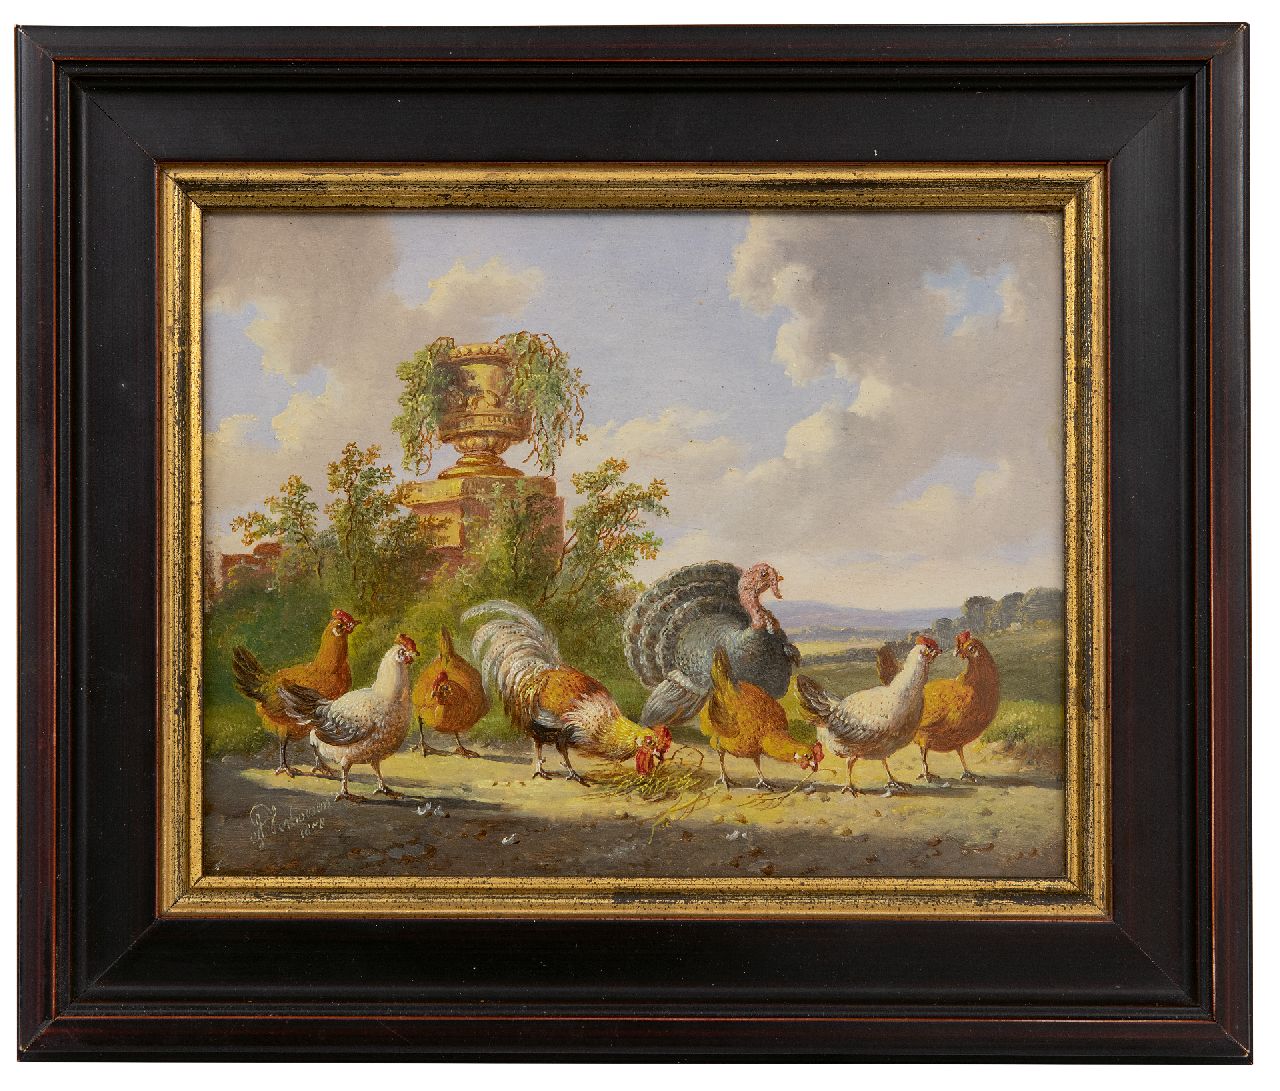 Verhoesen A.  | Albertus Verhoesen | Schilderijen te koop aangeboden | Pluimvee in een weids landschap, olieverf op paneel 14,3 x 18,6 cm, gesigneerd linksonder en gedateerd 1878